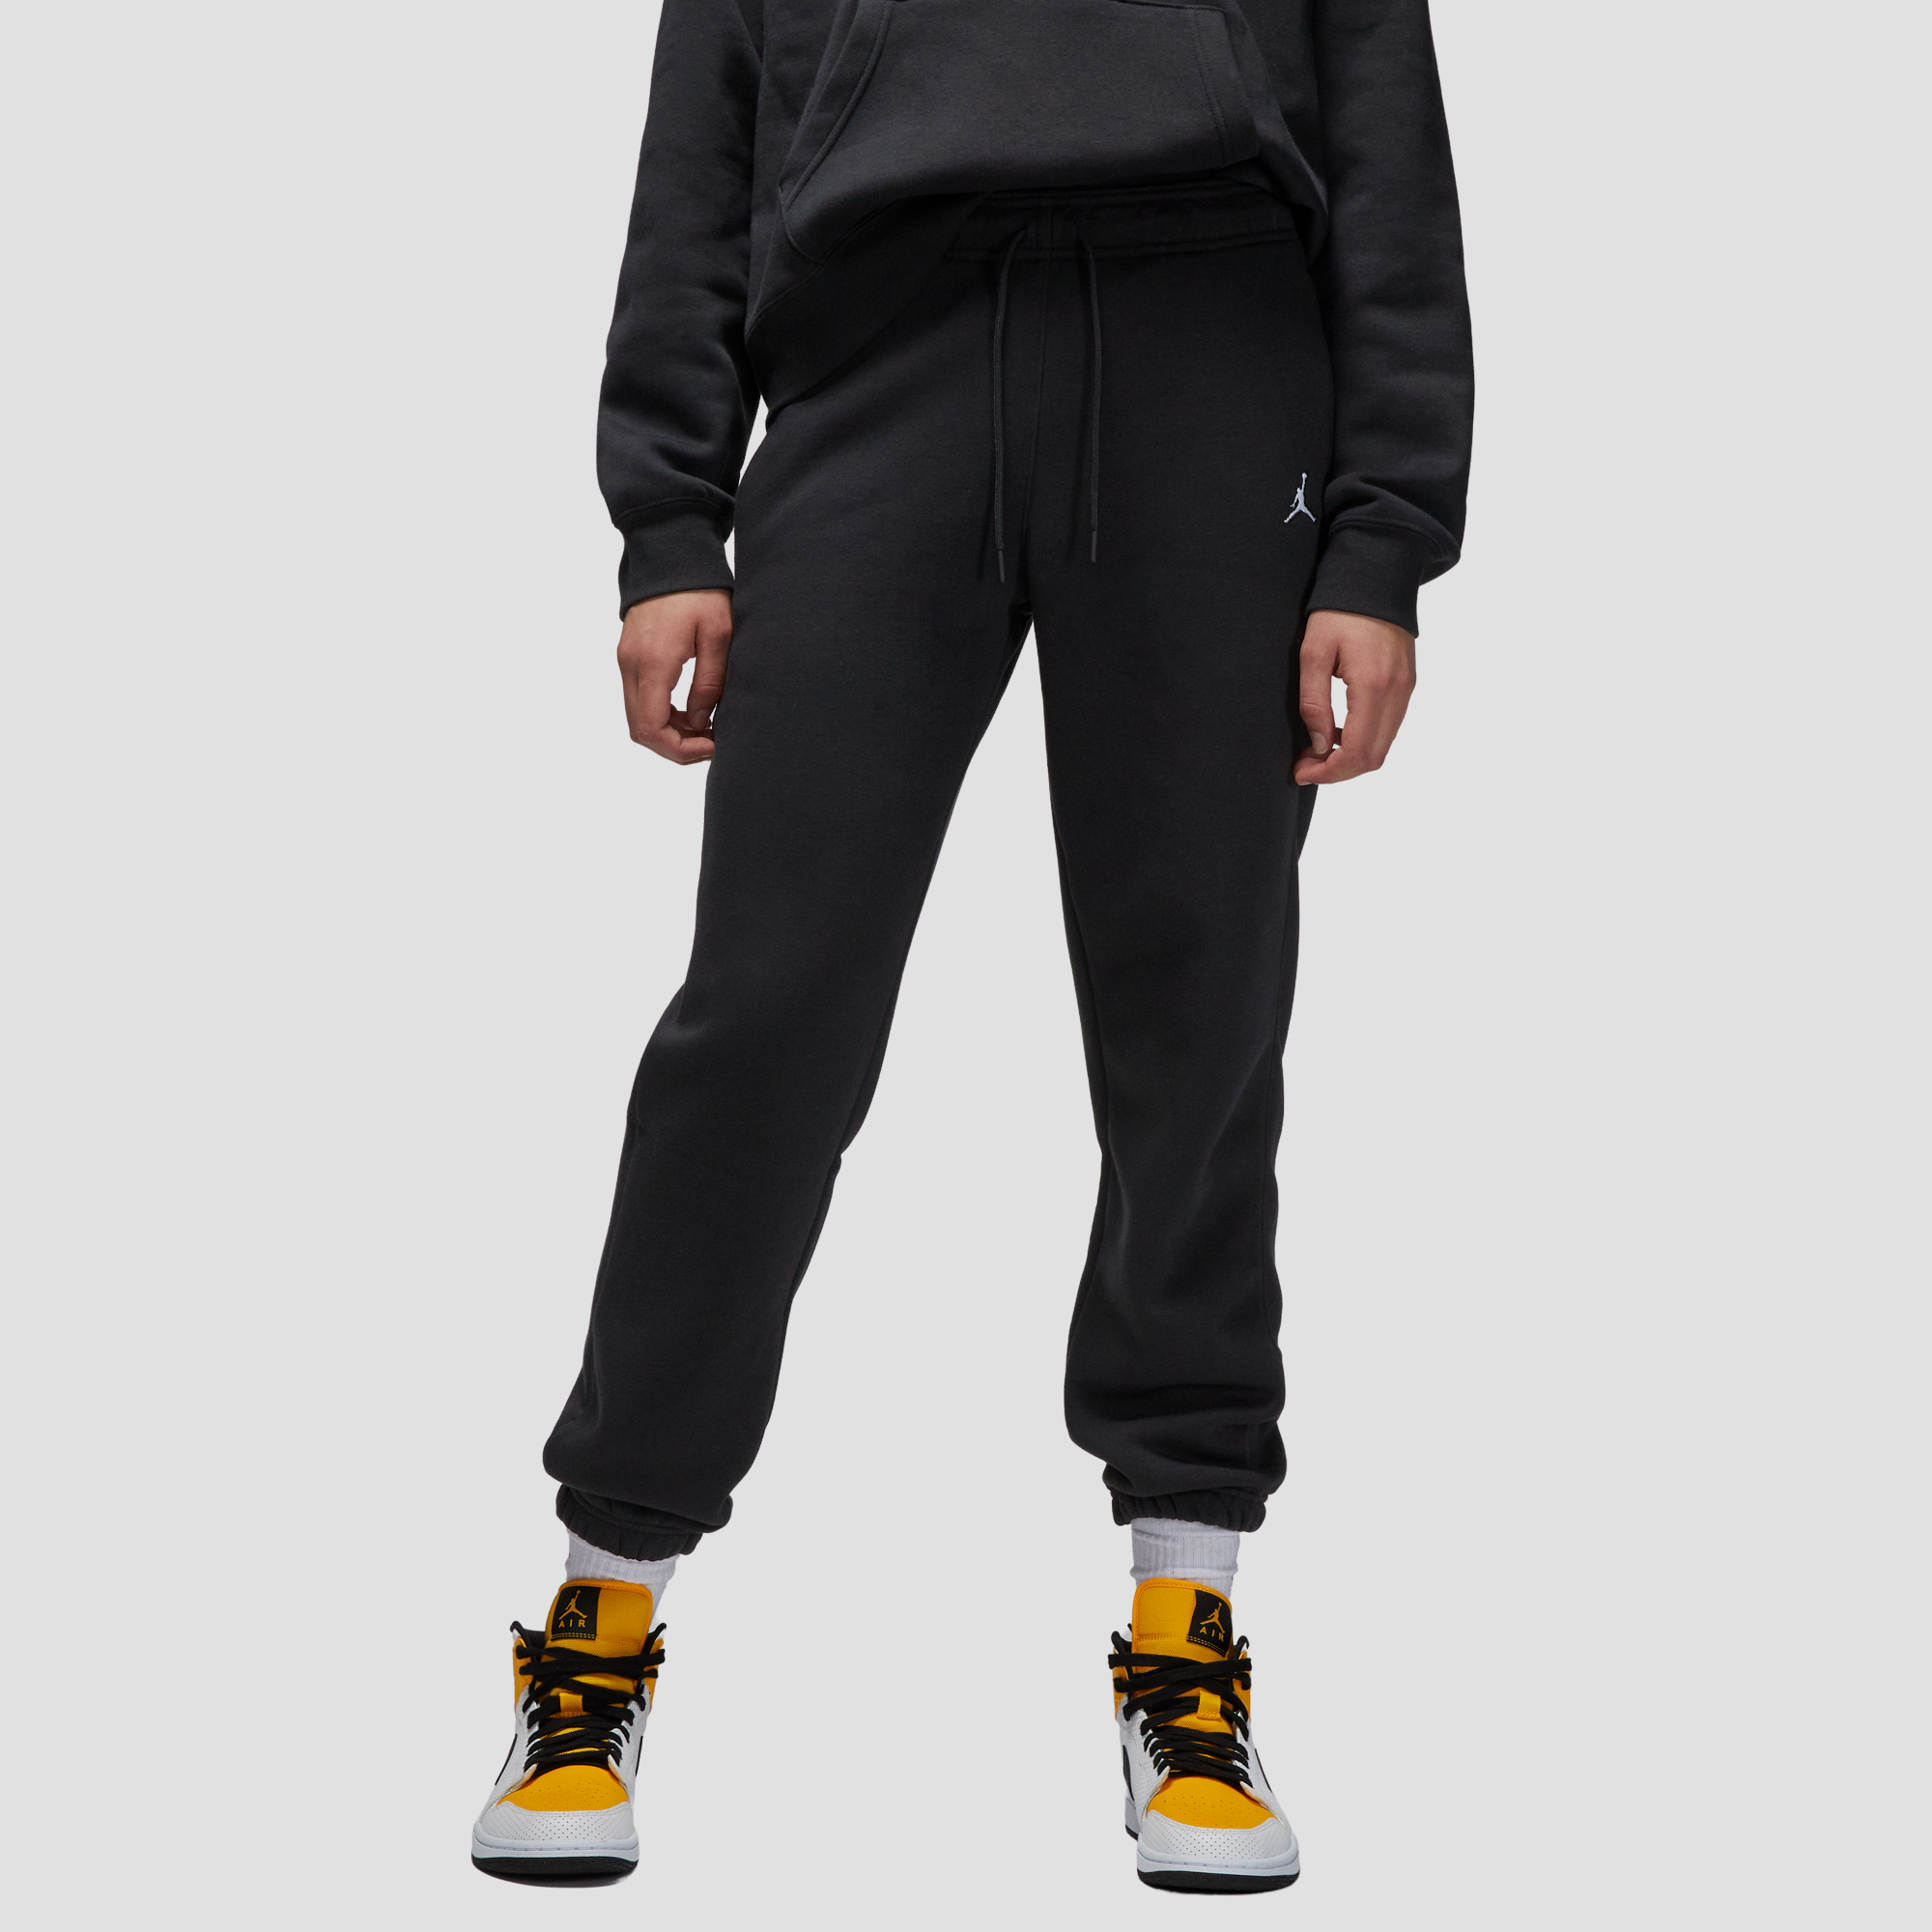 Air Jordan Brooklyn Women's Black Fleece Pants Air Jordan